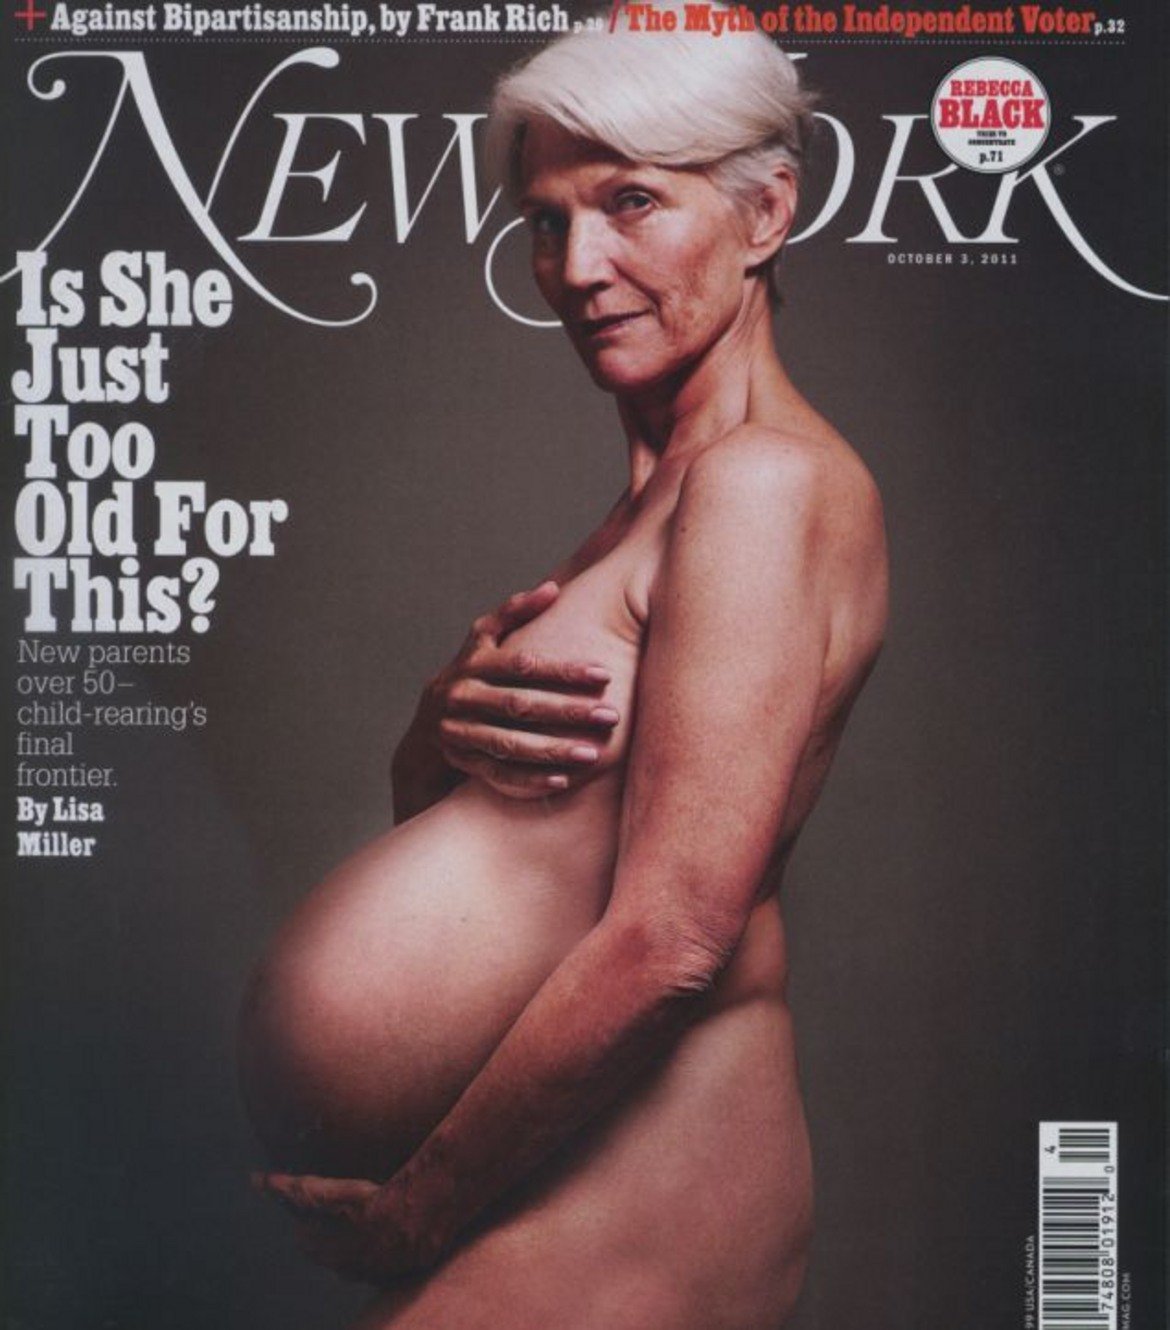 През 2011 г. Мей Мъск позира гола за корицата на сп. New York Magazine "бременна" - имитация на легендарната снимка на Деми Мур. Целта на фотосесията беше да се повдигне темата за бременността при възрастните жени. 